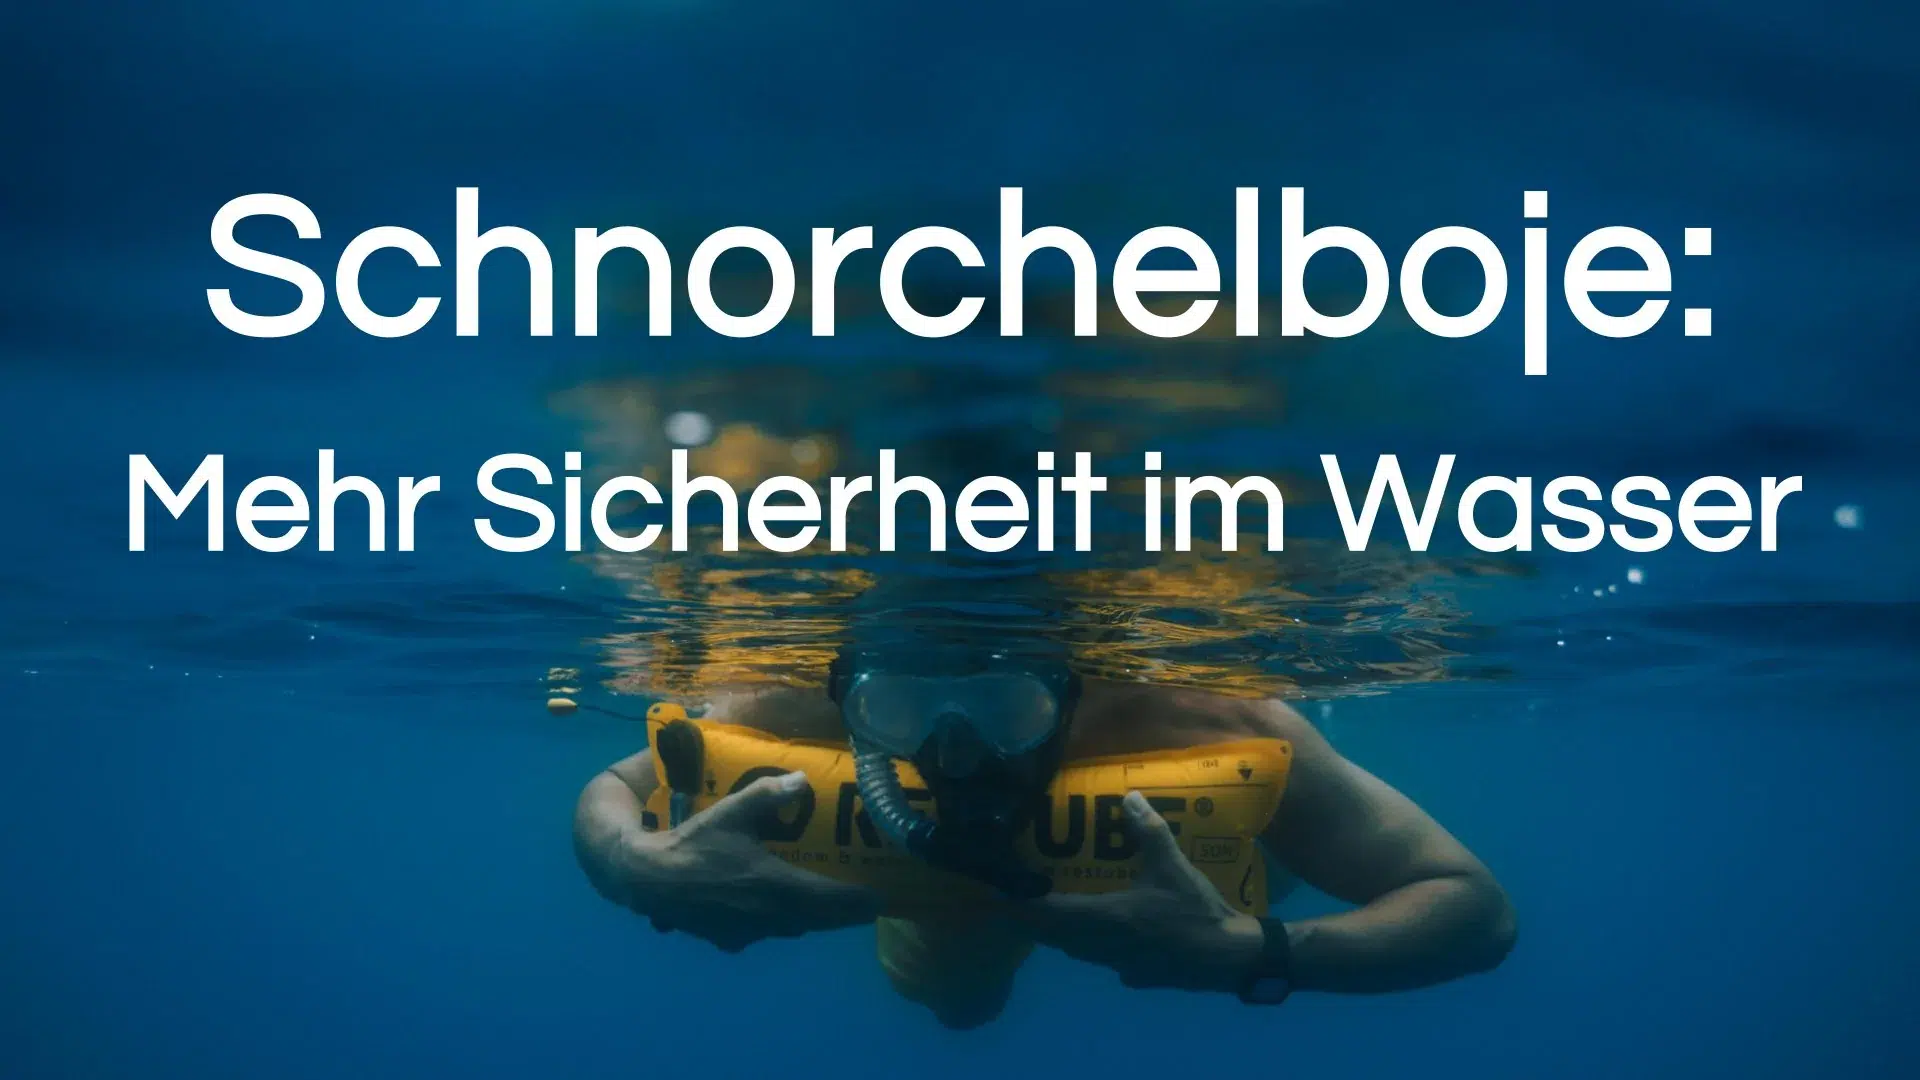 You are currently viewing Schnorchelboje: Mehr Sicherheit im Wasser